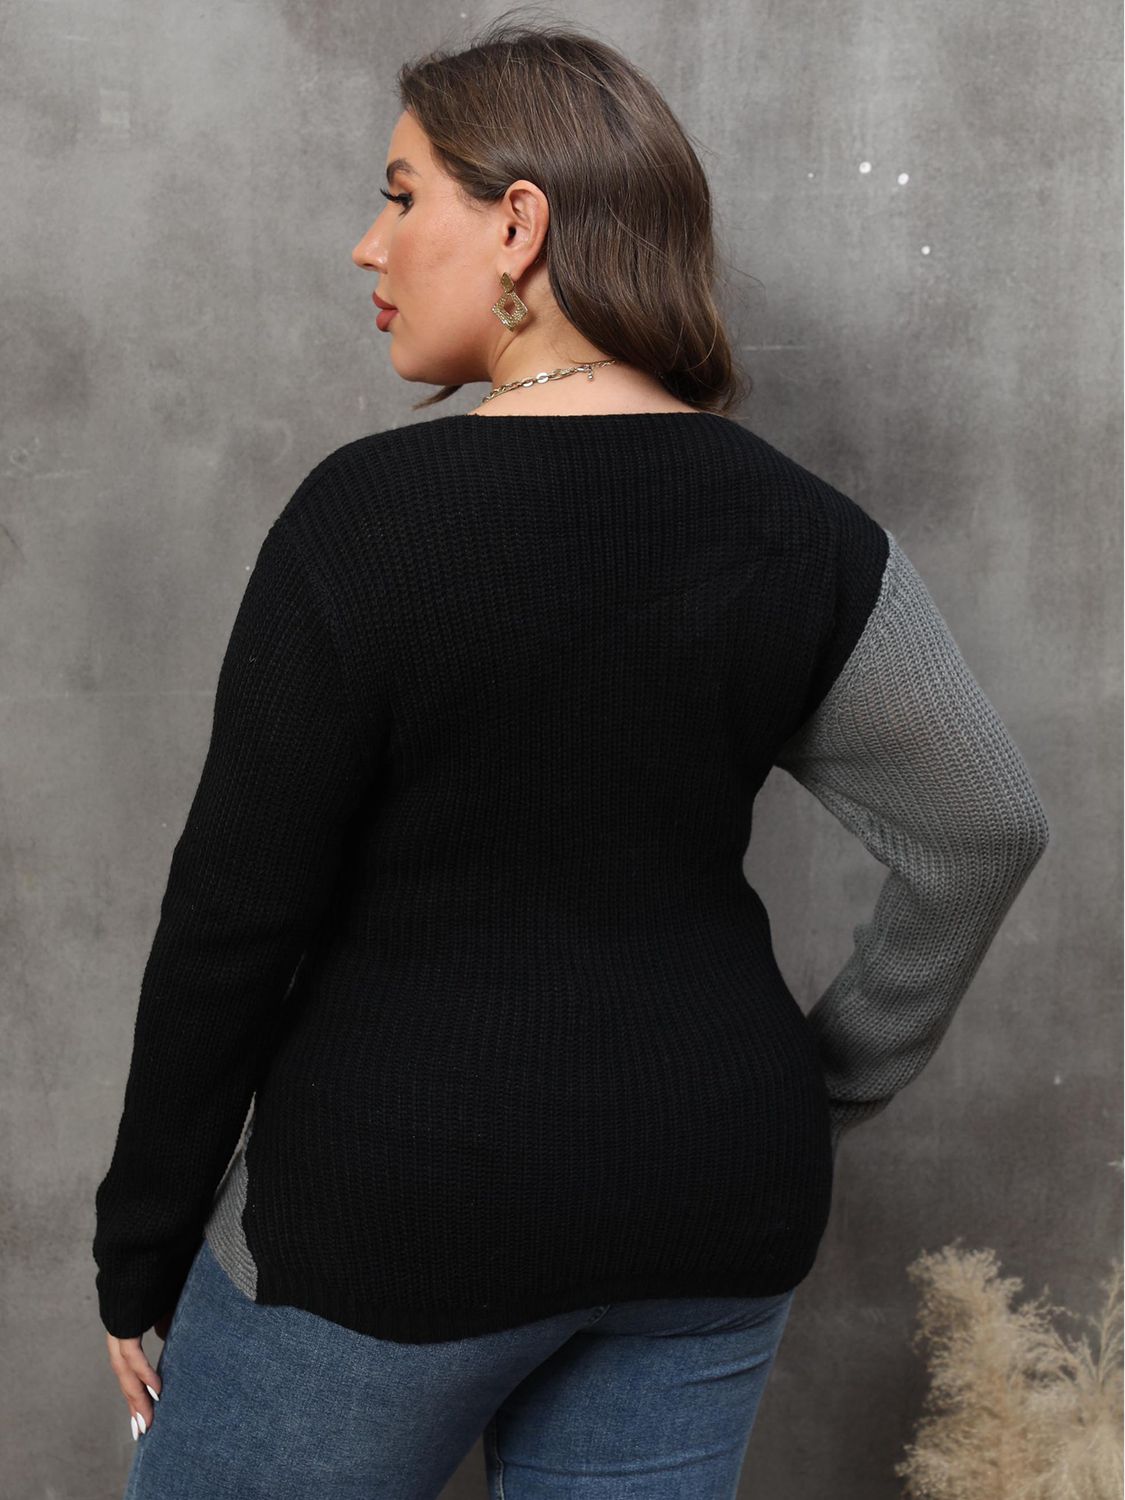 CrissCross Sweater - ONLINE EXCLUSIVE